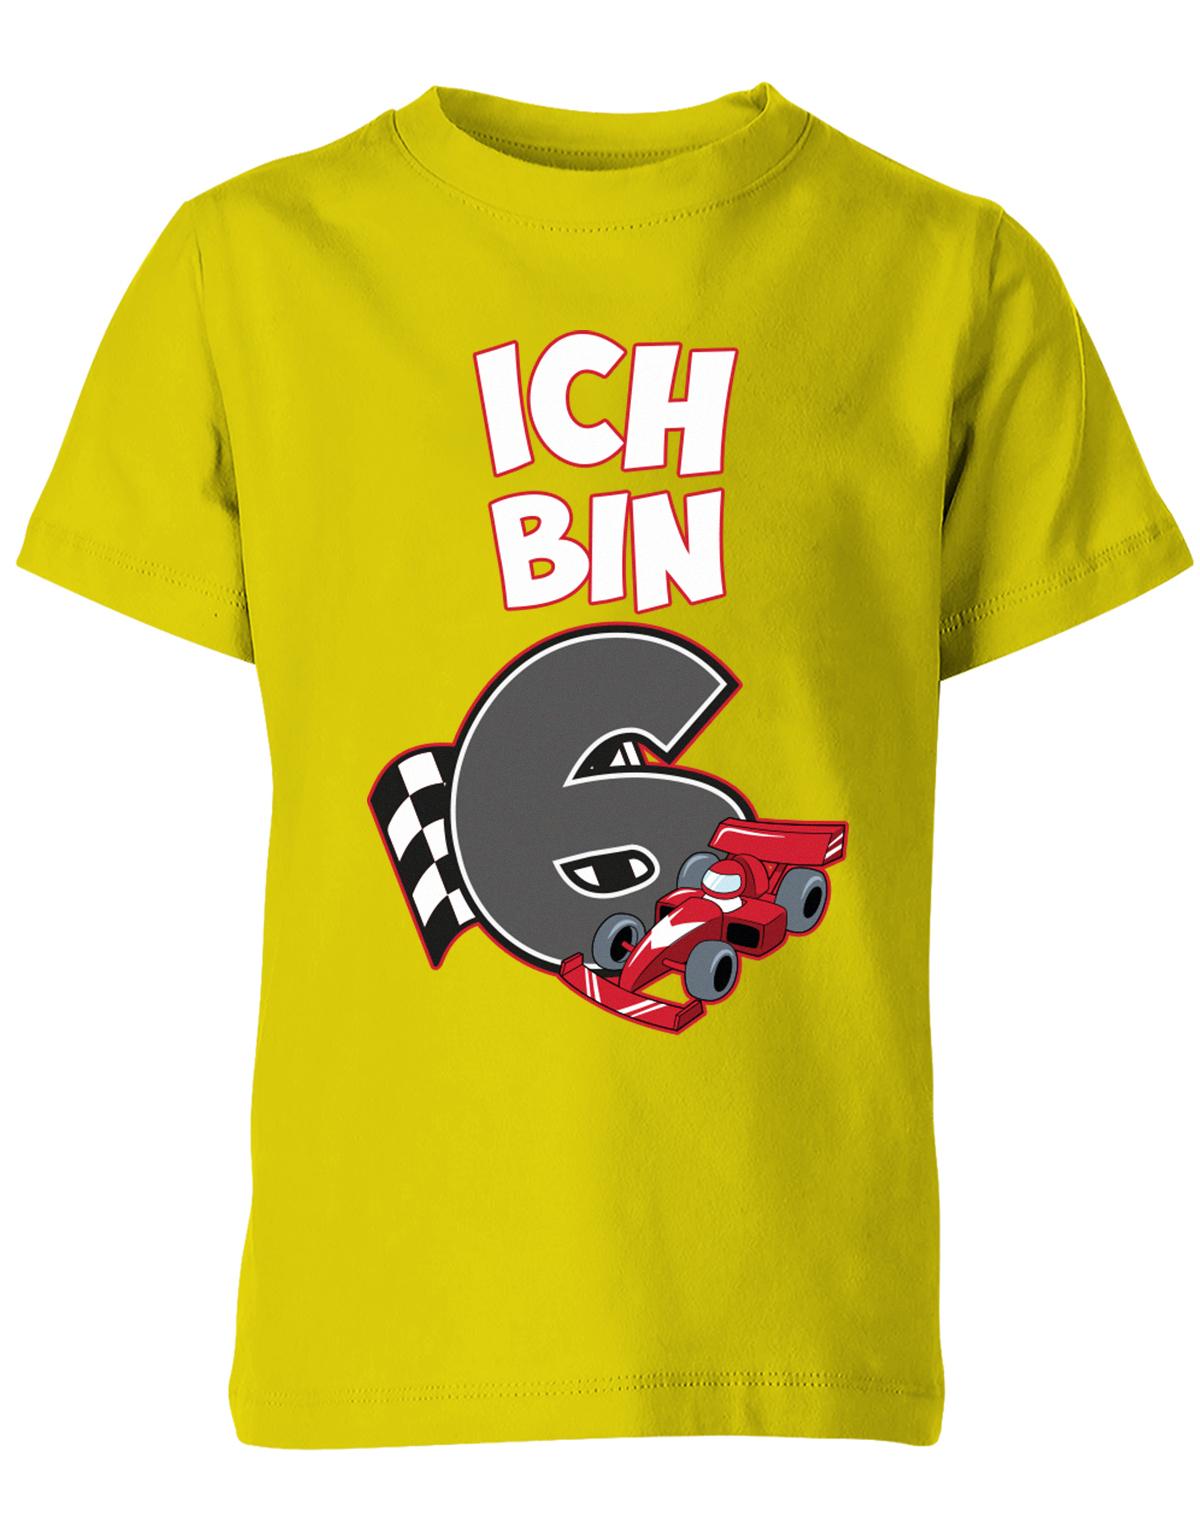 ich-bin-6-autorennen-rennwagen-geburtstag-rennfahrer-kinder-shirt-gelb